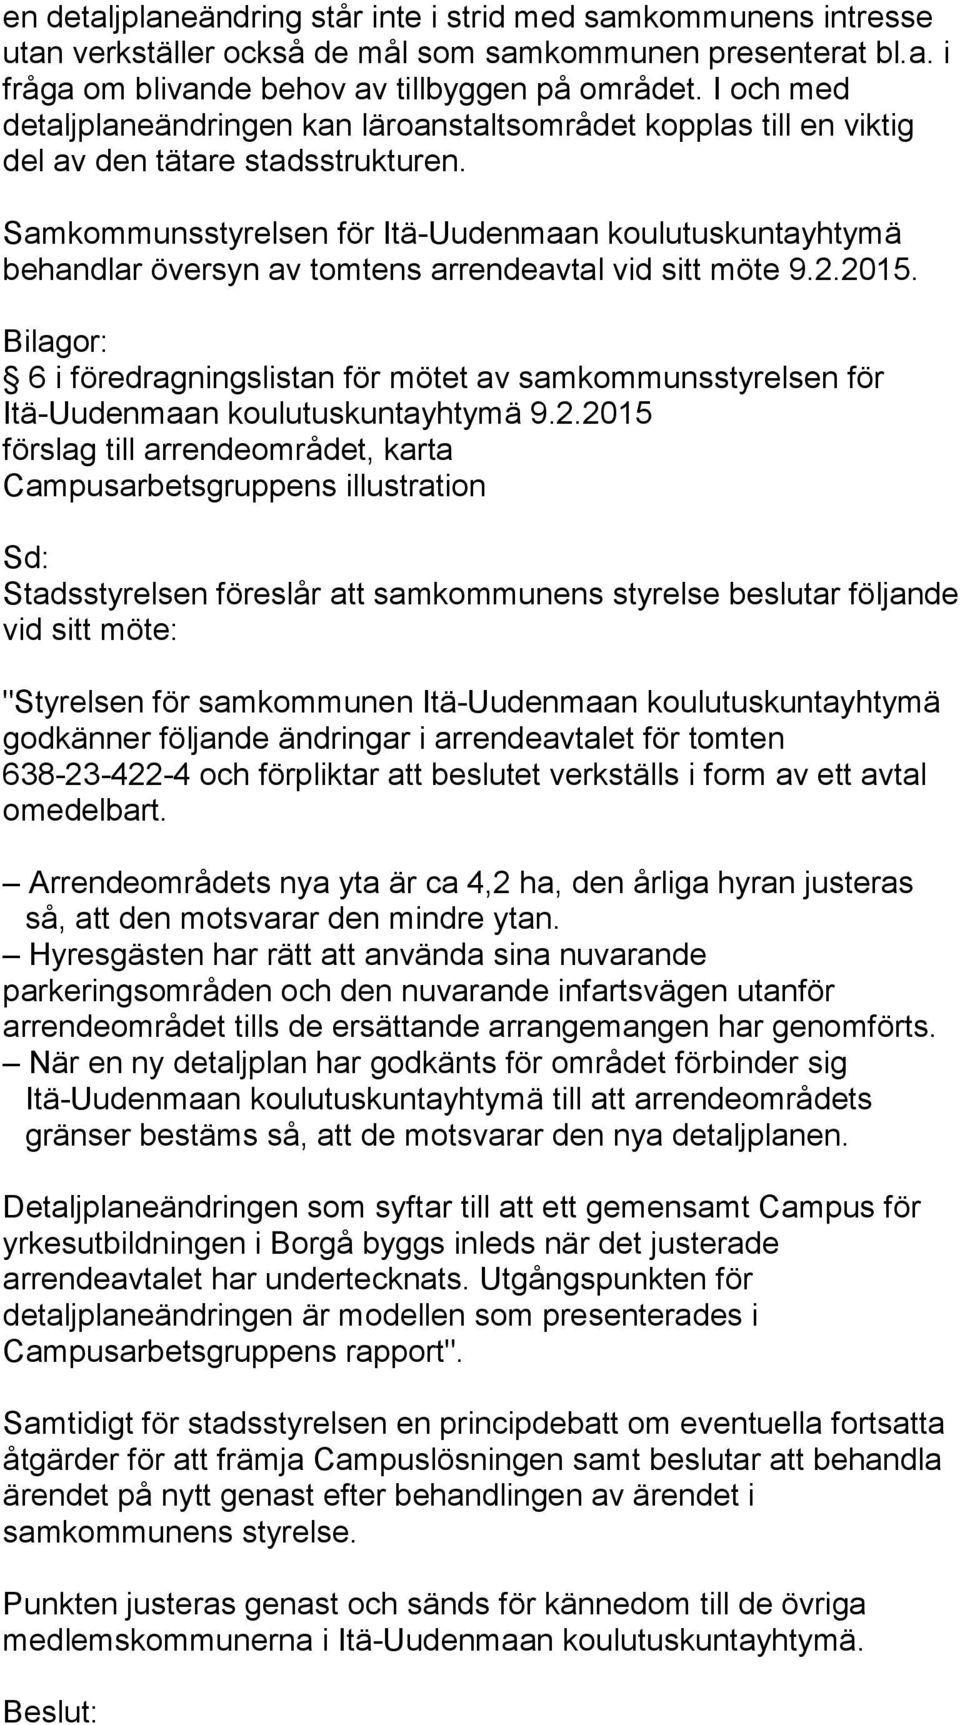 Samkommunsstyrelsen för Itä-Uudenmaan koulutuskuntayhtymä behandlar översyn av tomtens arrendeavtal vid sitt möte 9.2.2015.